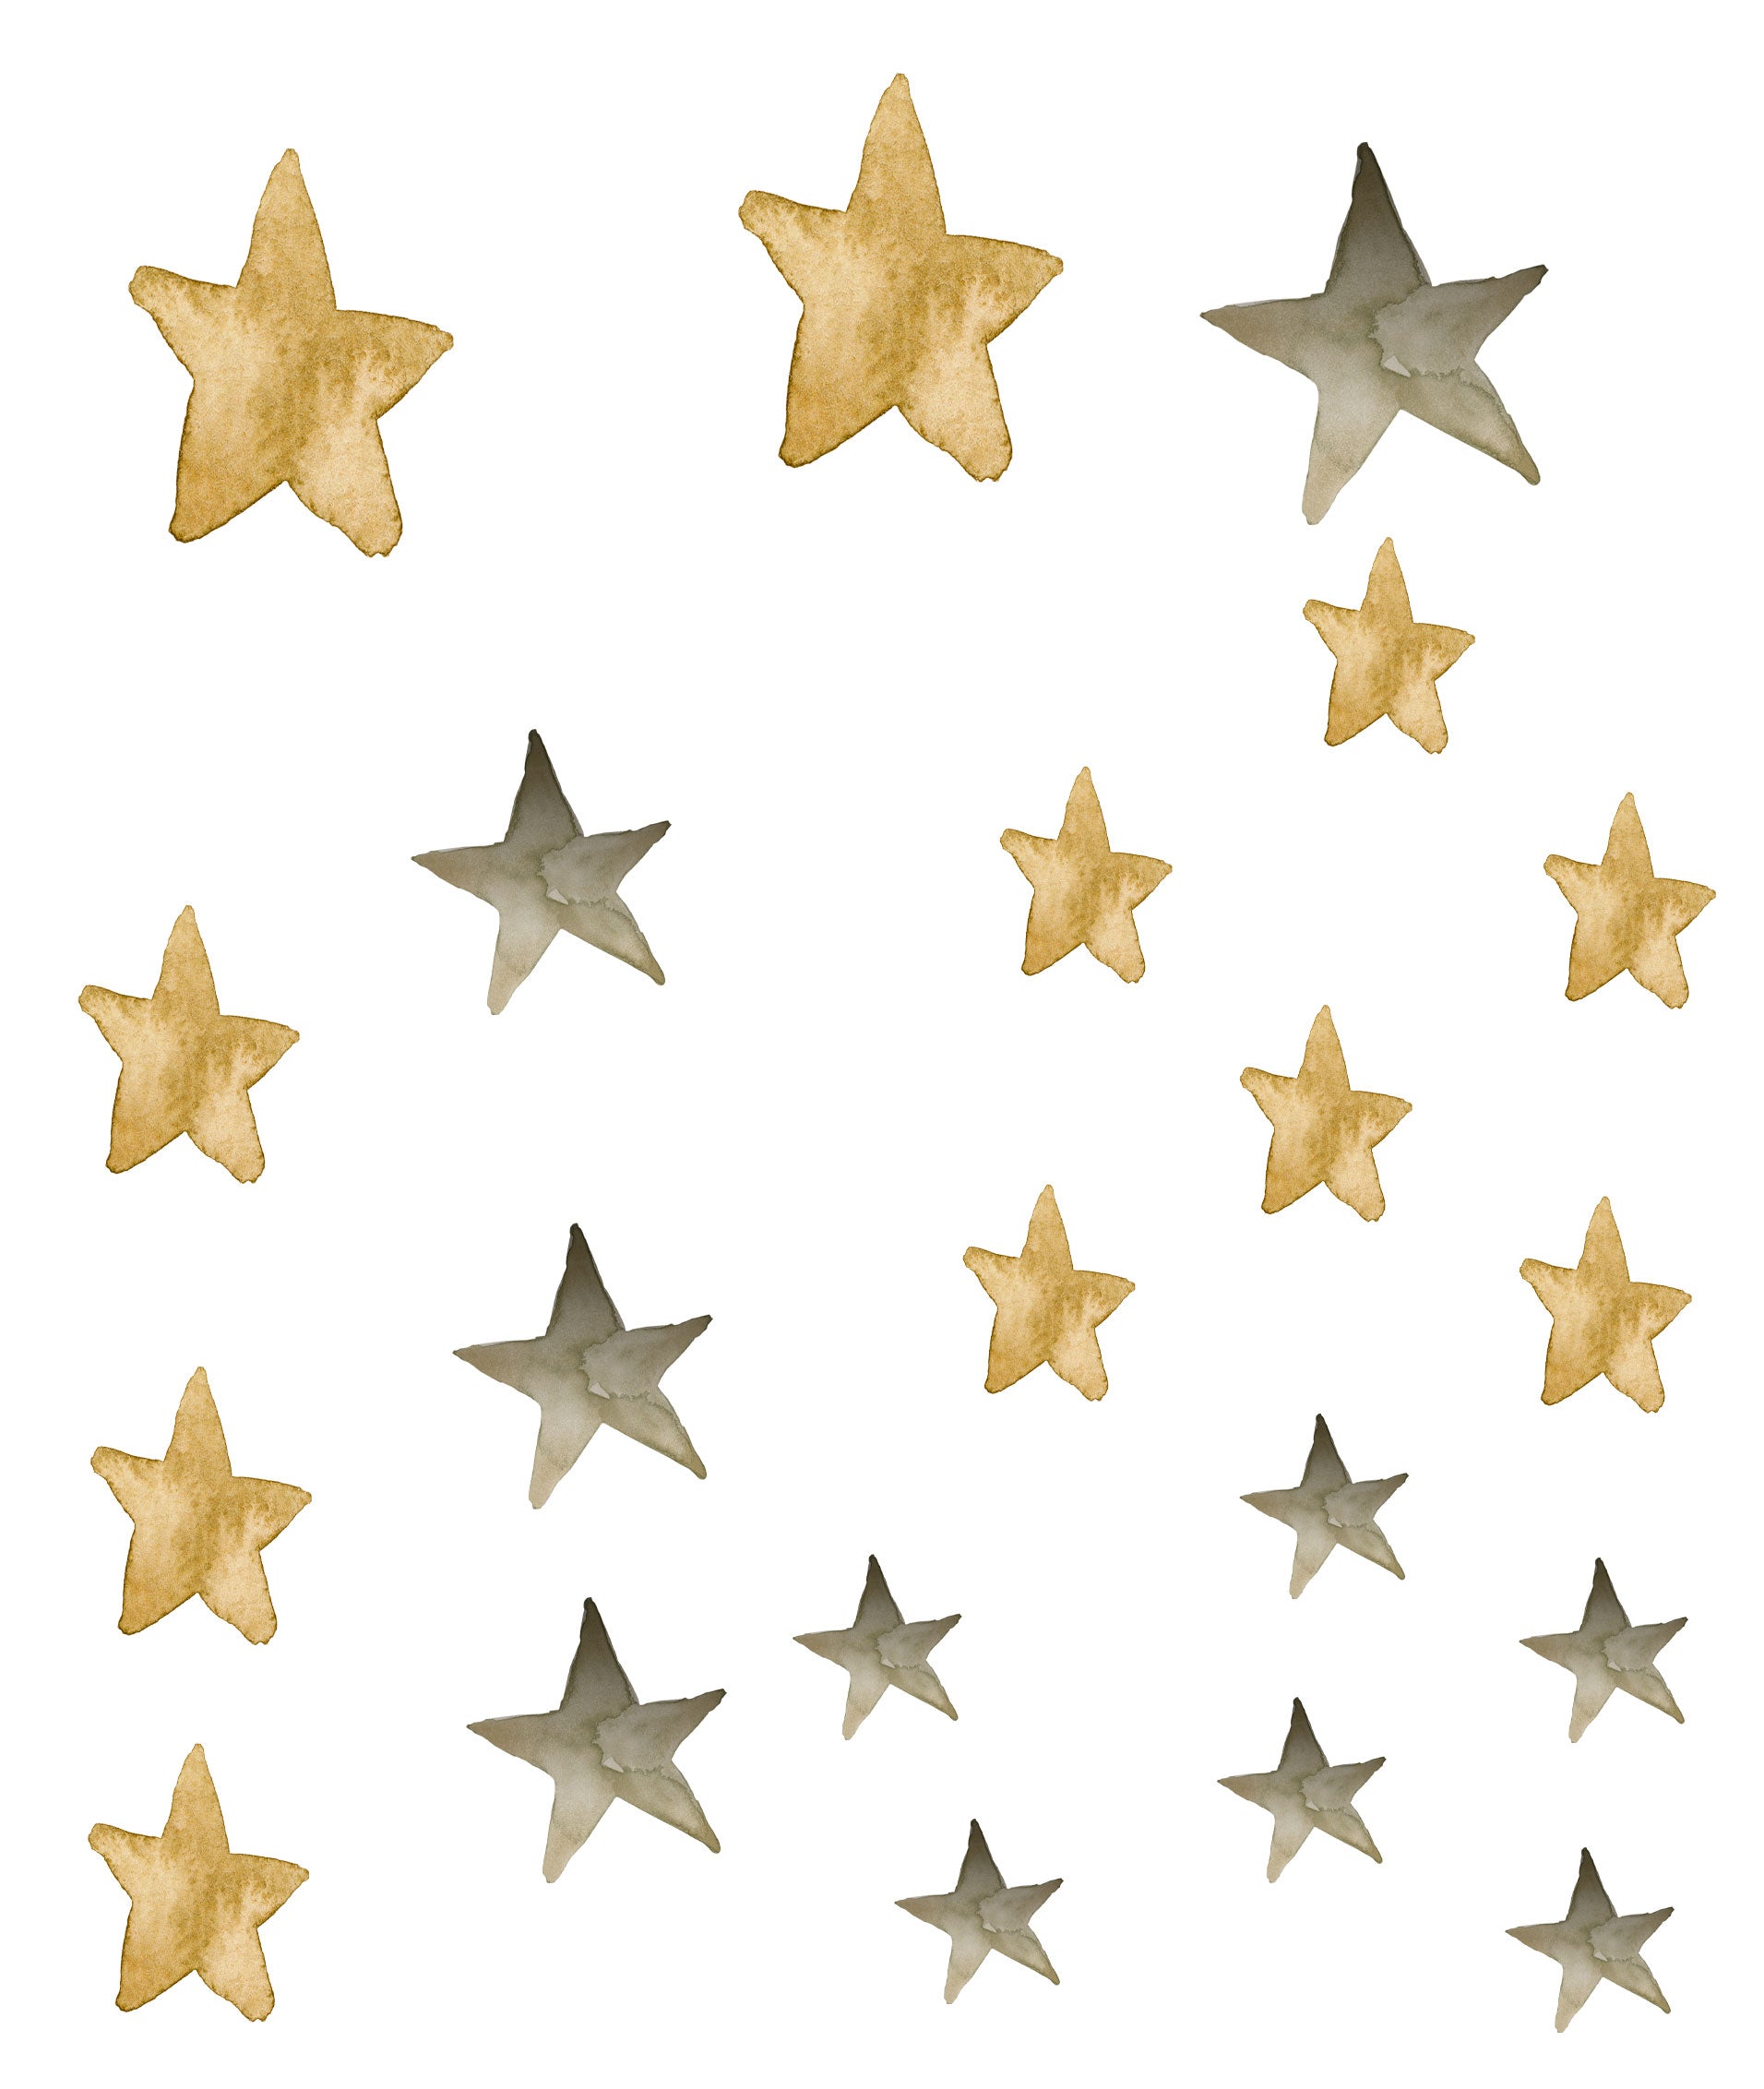 STARS AROUND THE WORLD - Sticker Set